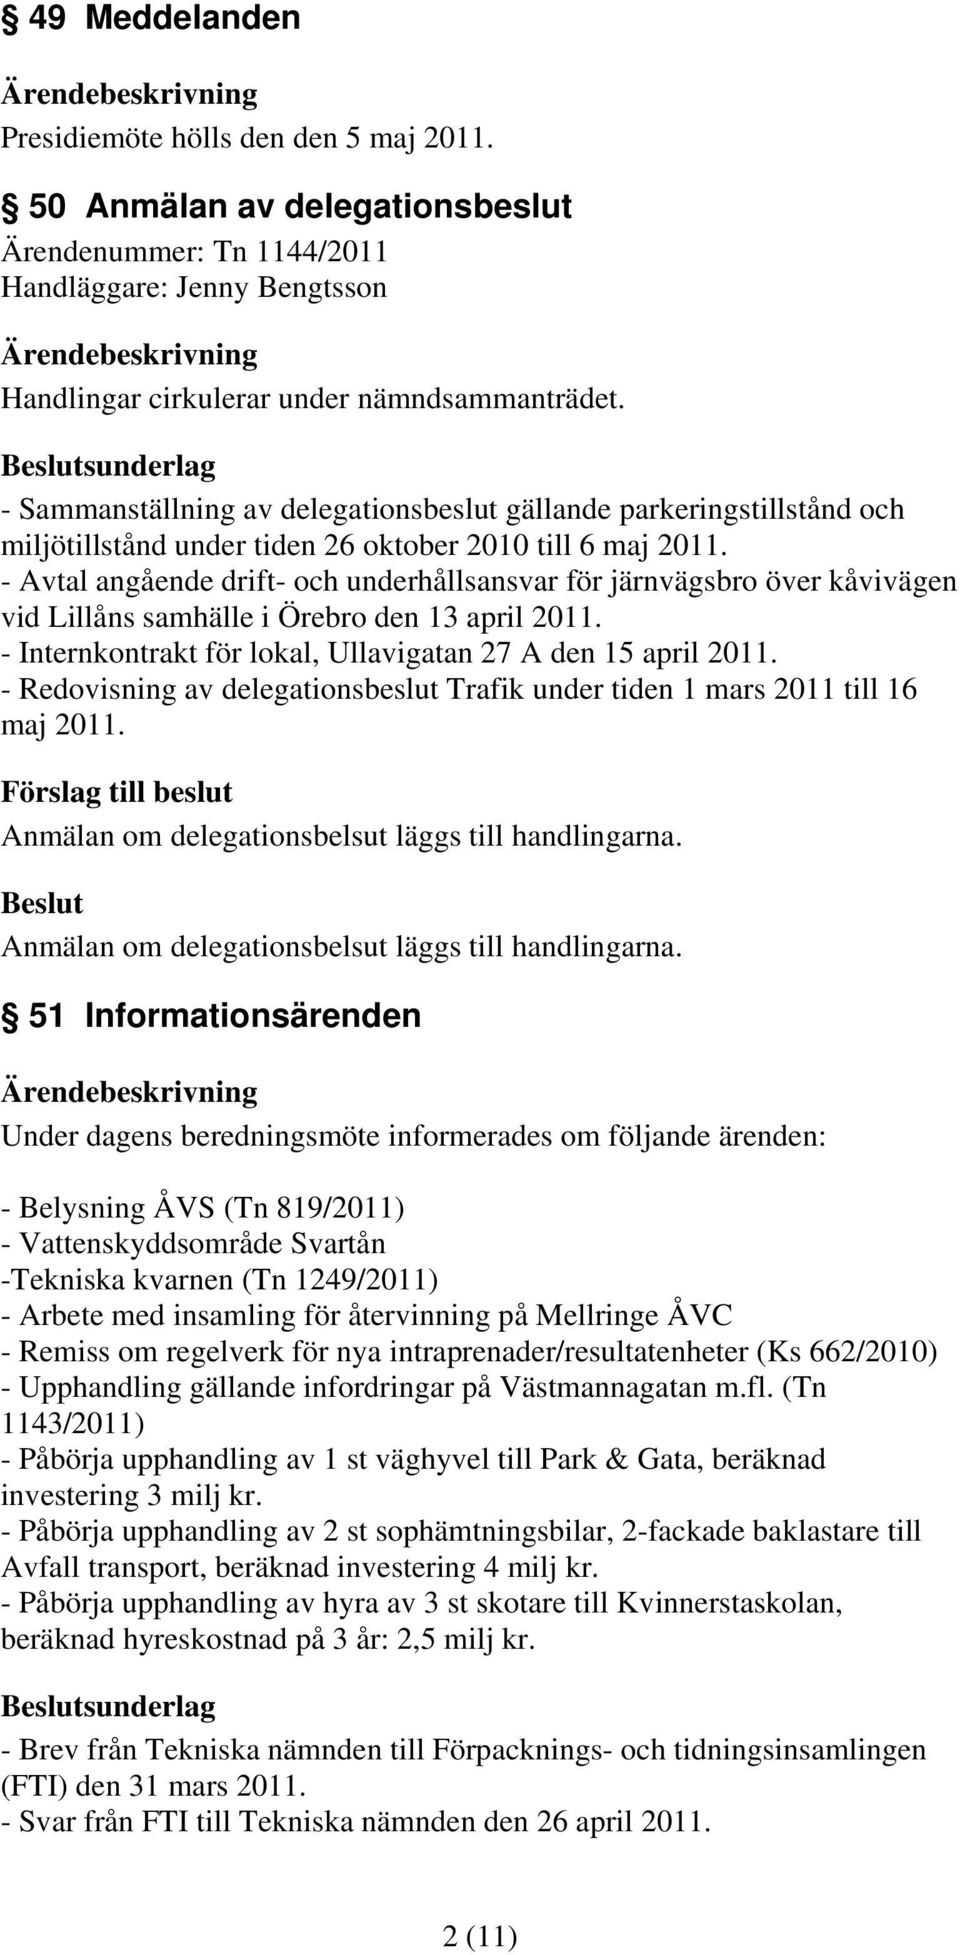 - Avtal angående drift- och underhållsansvar för järnvägsbro över kåvivägen vid Lillåns samhälle i Örebro den 13 april 2011. - Internkontrakt för lokal, Ullavigatan 27 A den 15 april 2011.